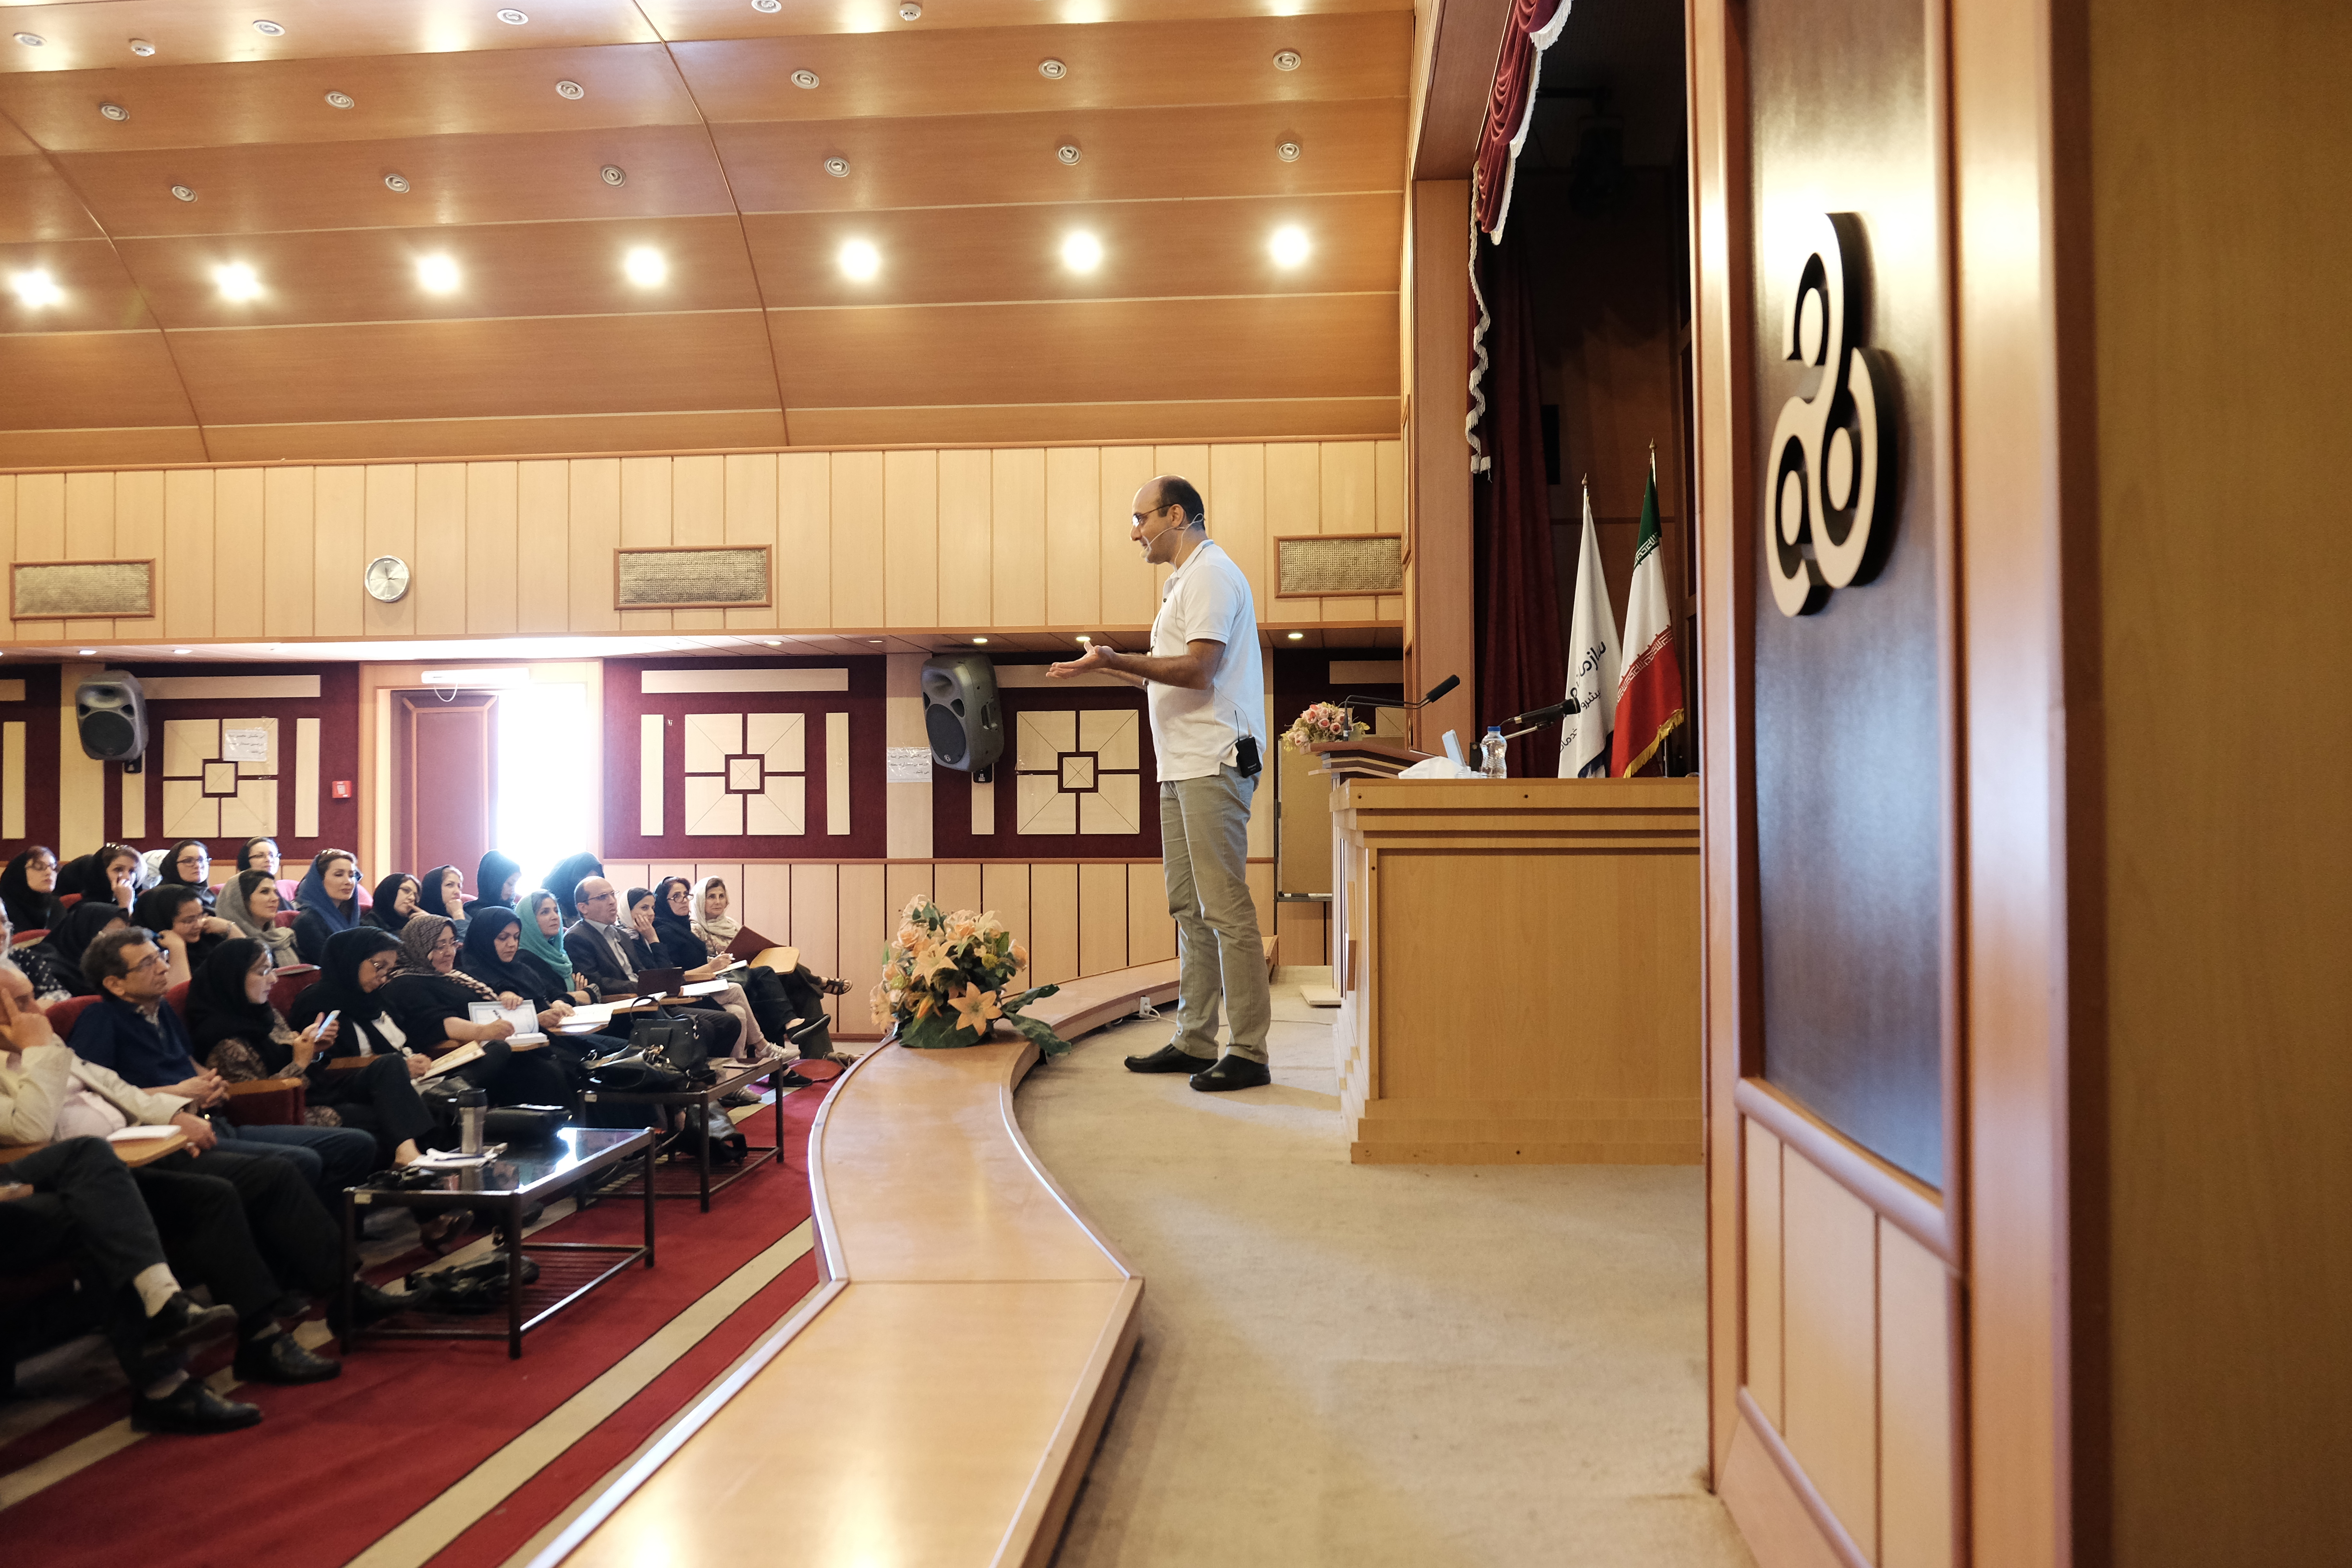 تصاویری از سخنرانی دکتر فرزاد گلی در سمینار مشهد با عنوان نرمش توجه - سال ۱۳۹۴